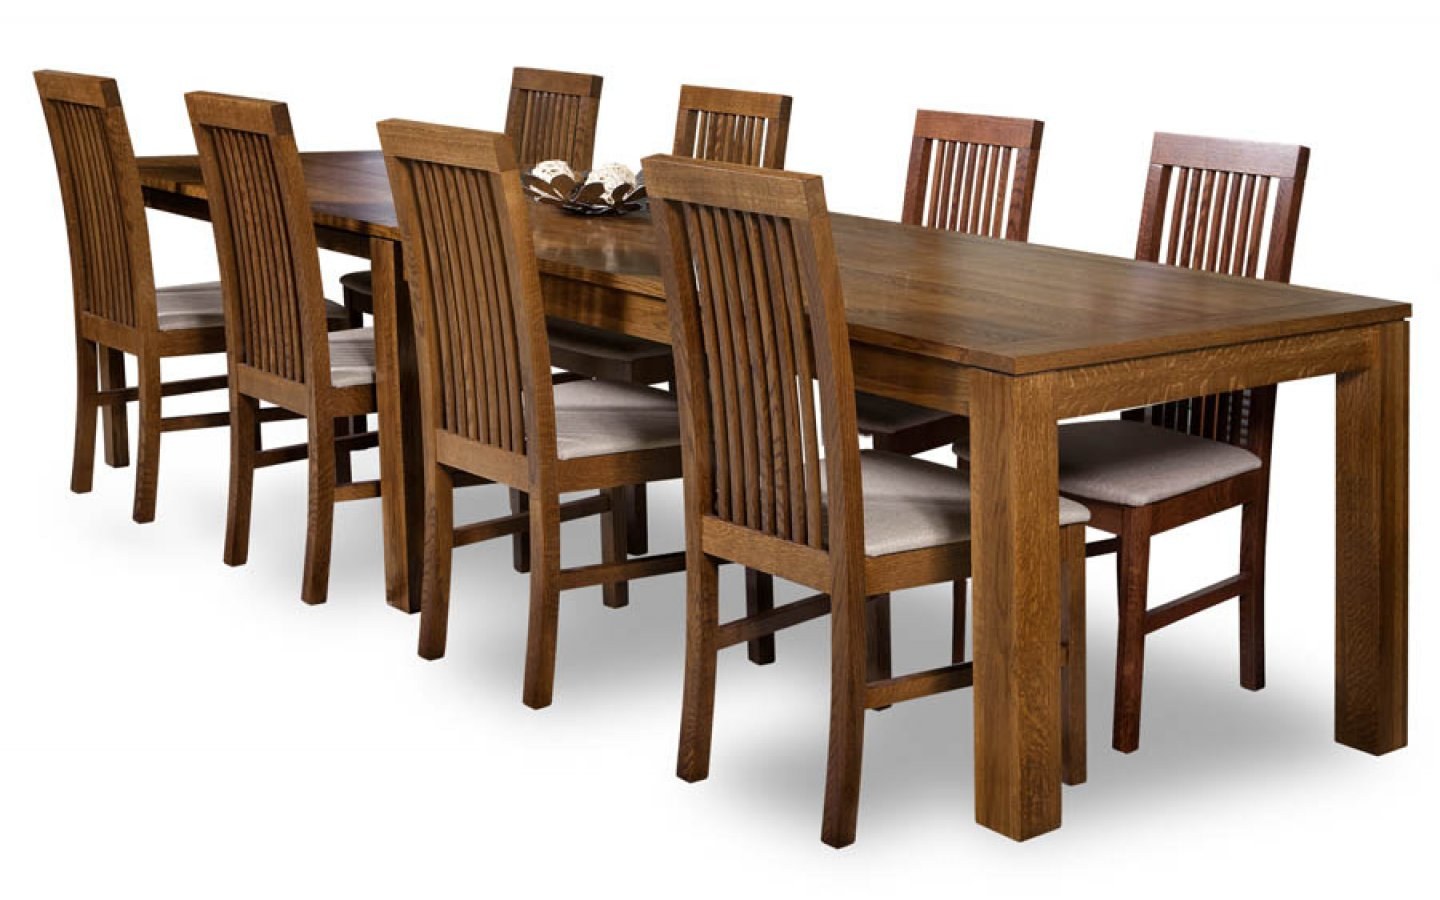 Столы и стулья от производителя. Обеденная группа Олимп МФ-103.001. Стол для столовой 6-местный h174011. Обеденная группа ct2950т-8162. Столы обеденные Пинскдрев Альт.